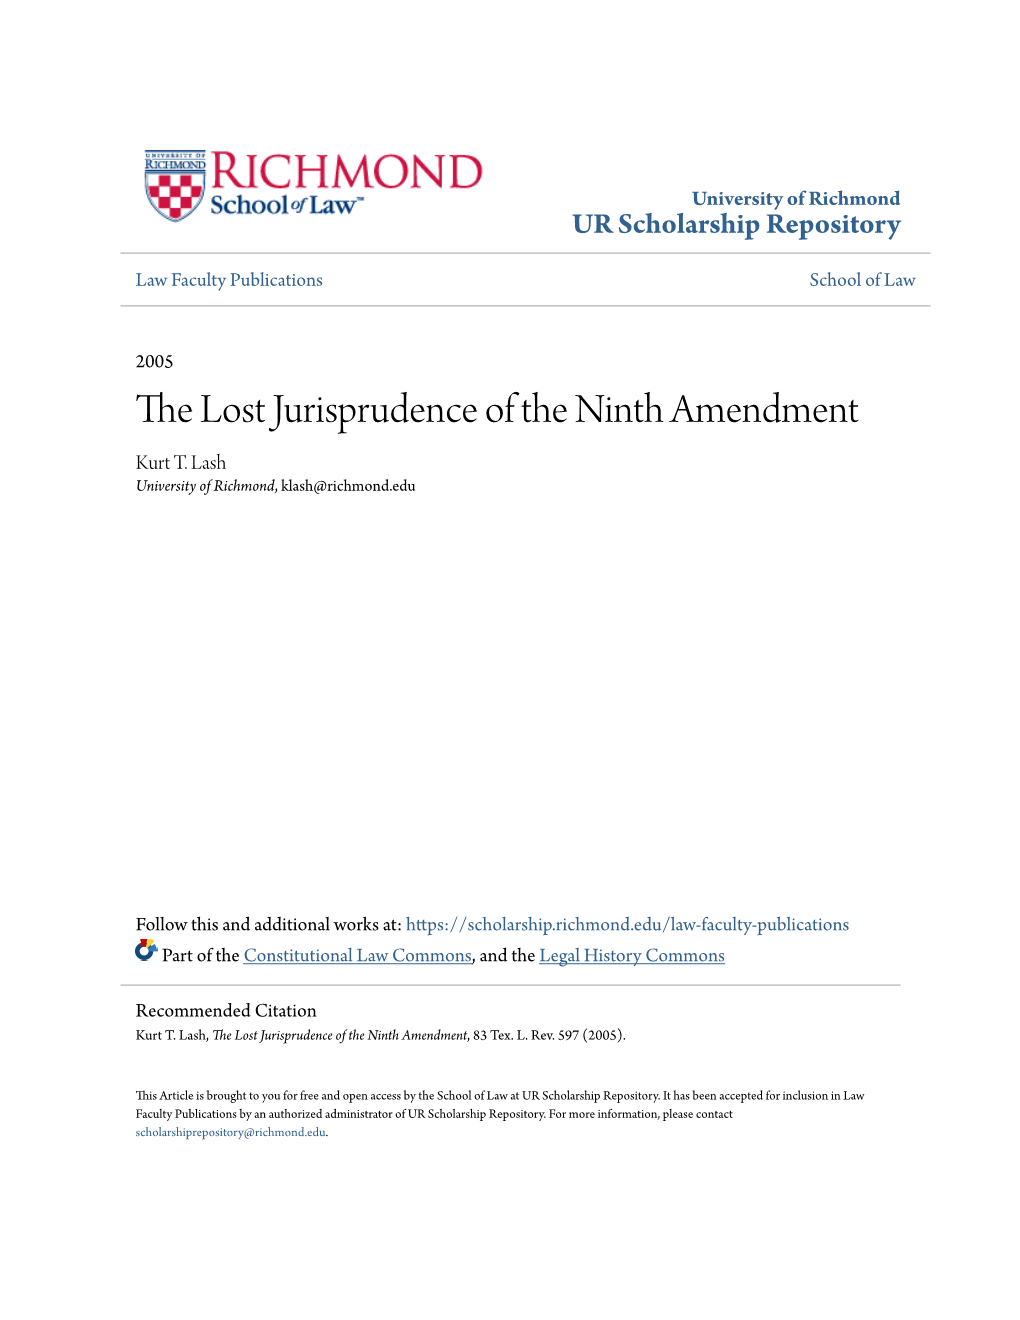 The Lost Jurisprudence of the Ninth Amendment Kurt T